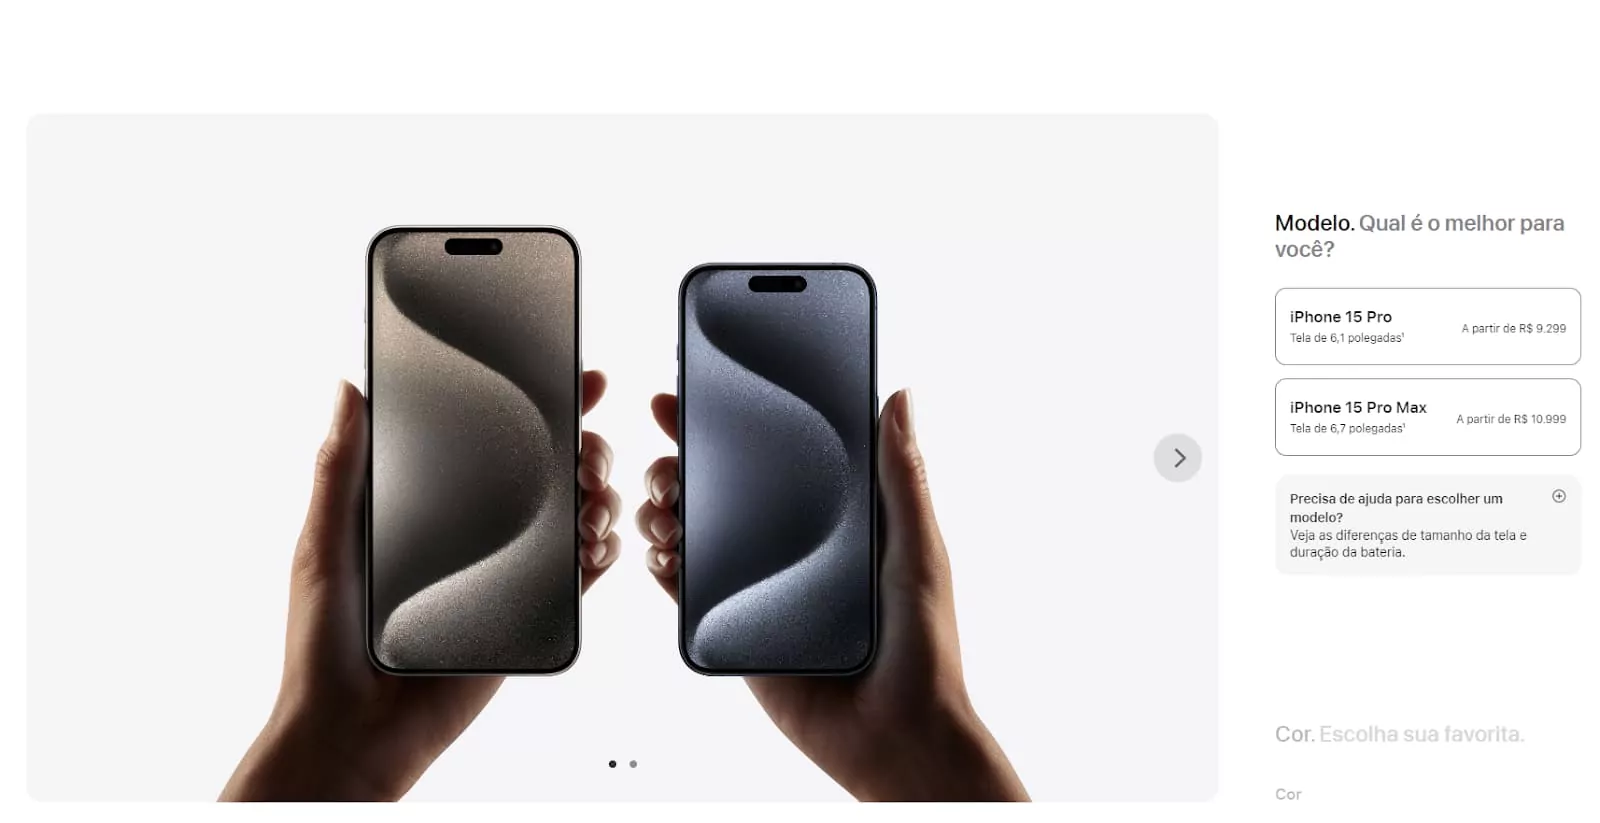 captura de tela do site da apple, com comparativo entre duas versões de iphone 15 pro, mostrando os aparelhos lado a lado